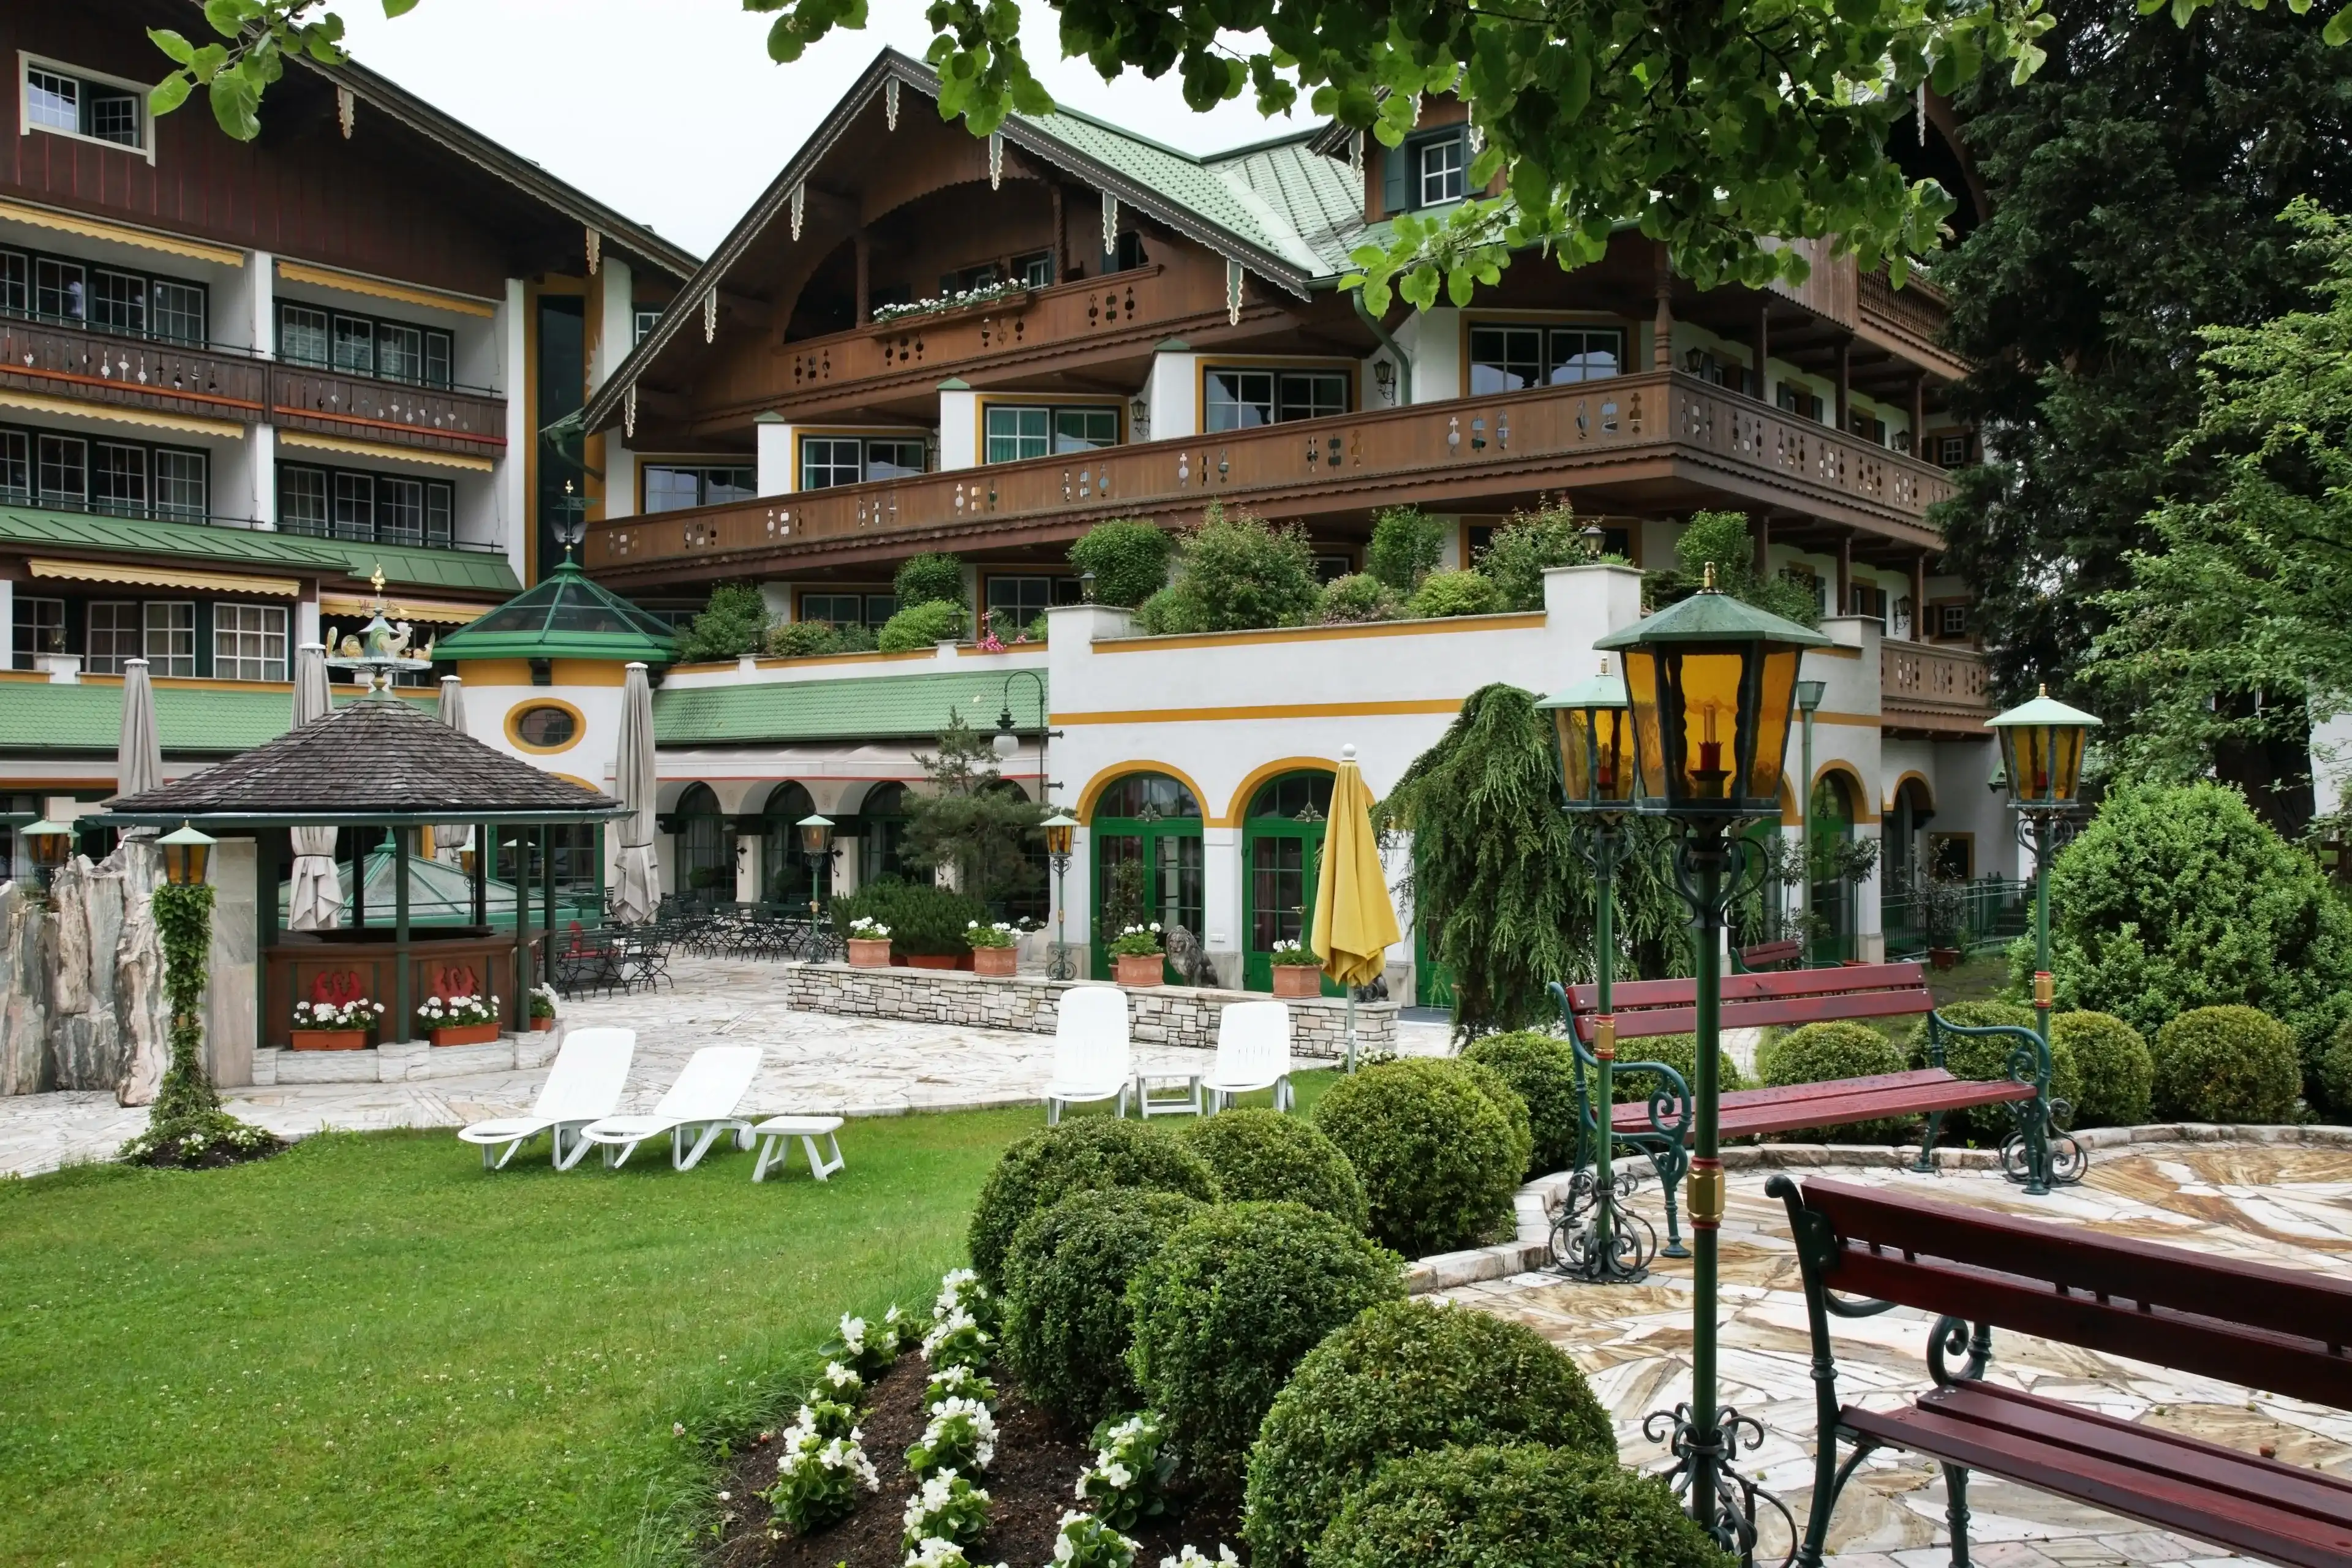 Best Mayrhofen hotels. Cheap hotels in Mayrhofen, Austria